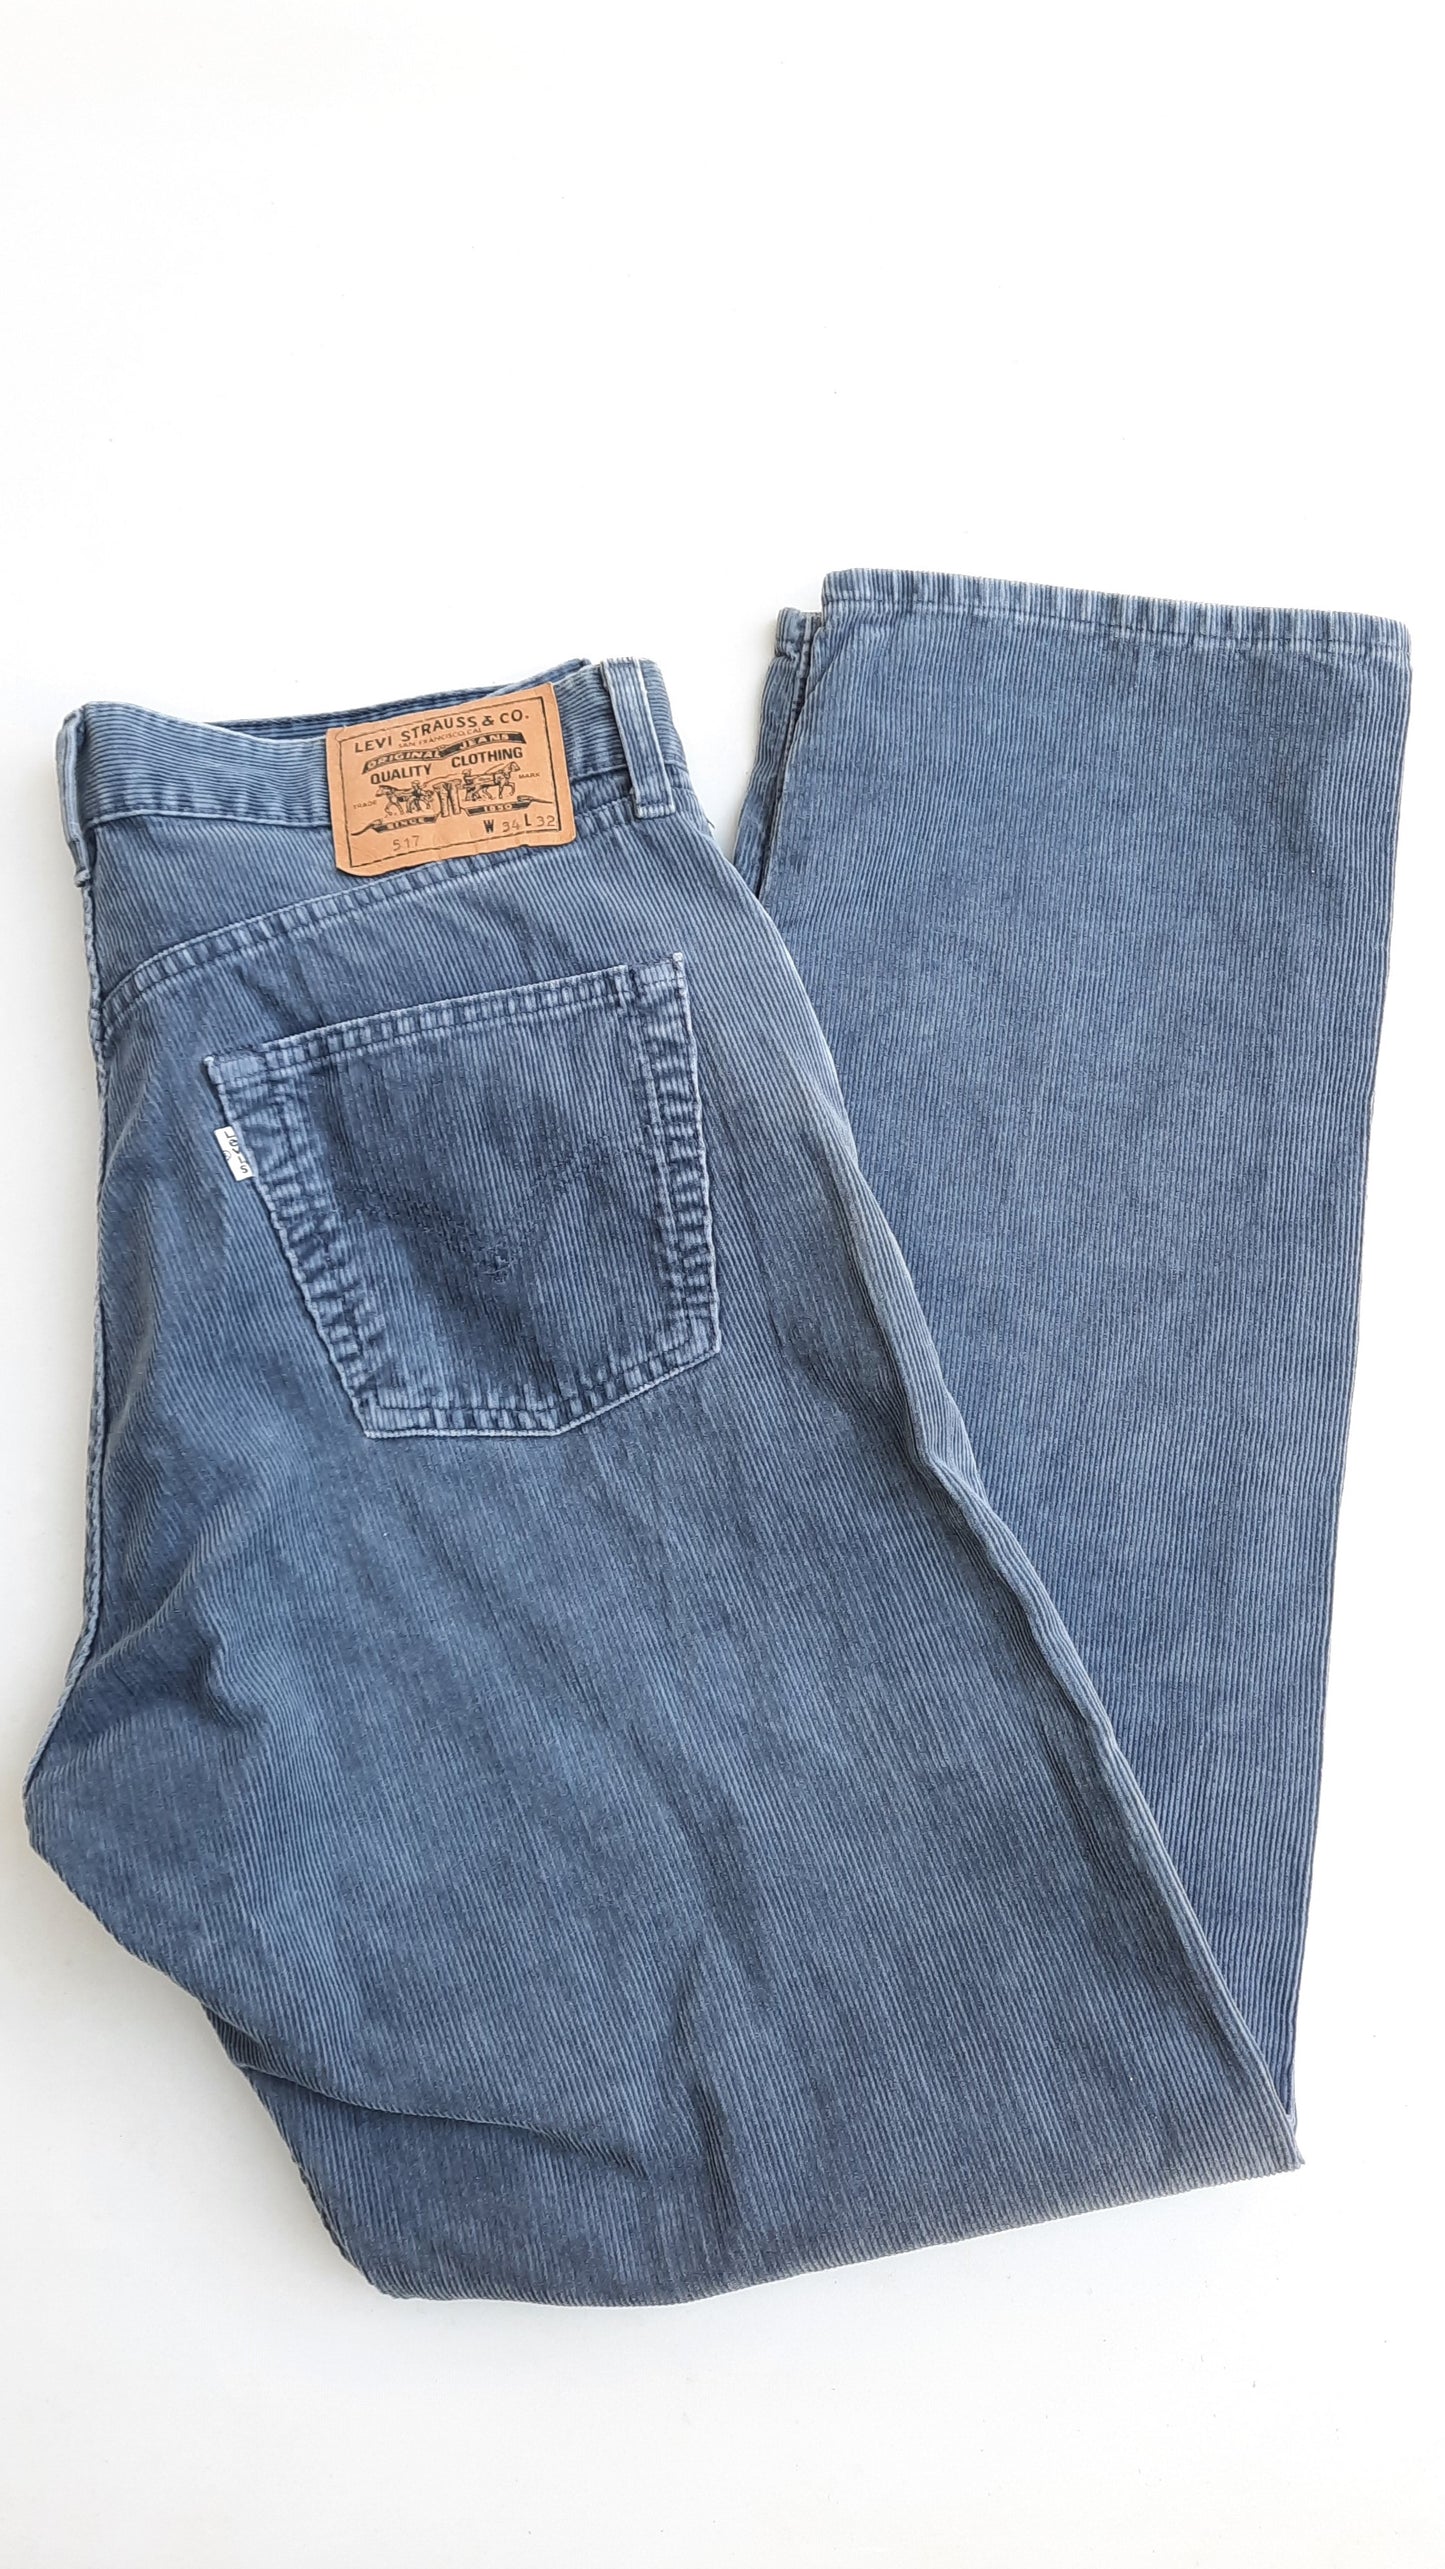 Vintage Corduroy Levi's Trousers 517 Model